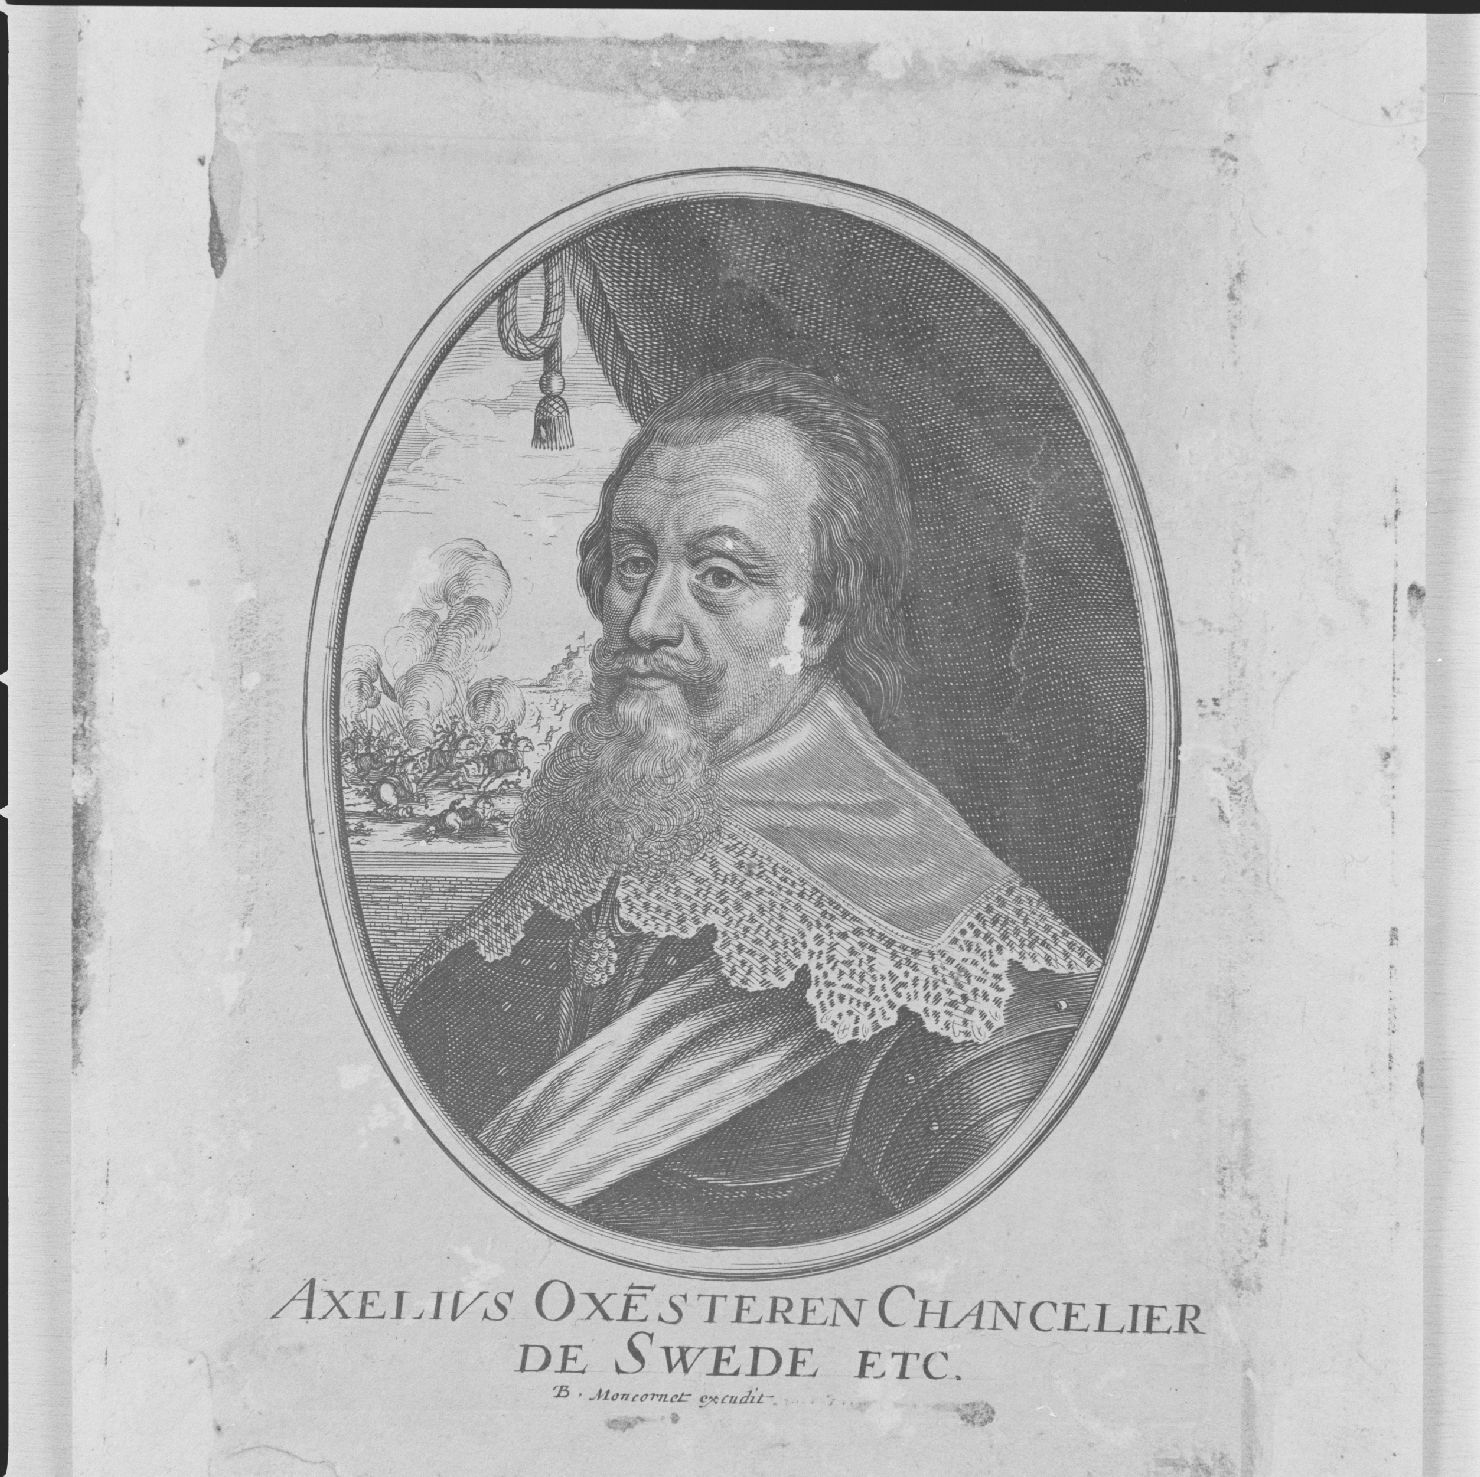 ritratto di Axelius Oxensteren cancelliere di Svezia (stampa smarginata, serie) - ambito francese, ambito francese, ambito francese (sec. XVII)